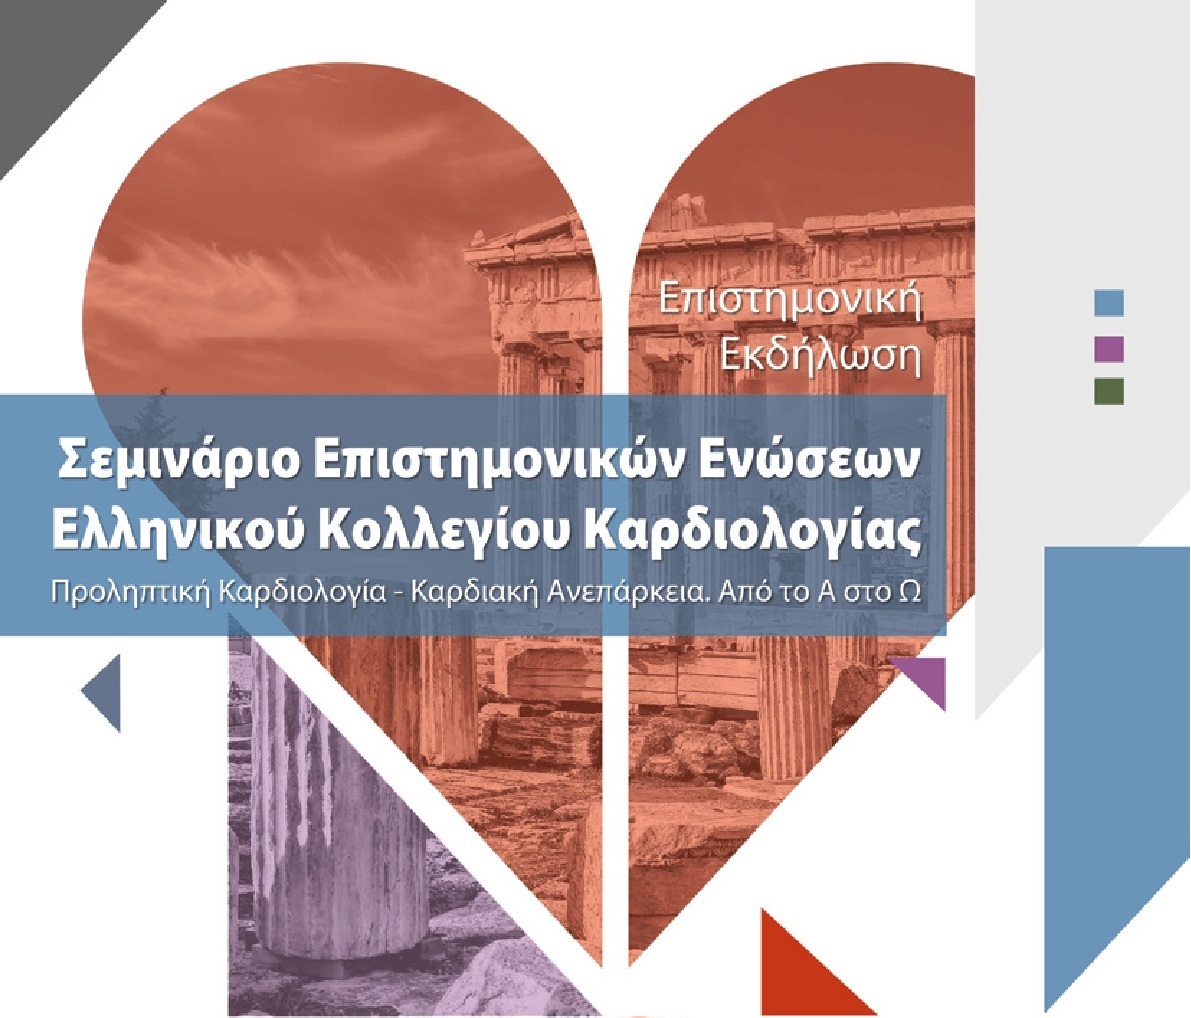 Σεμινάριο Επιστημονικών Ενώσεων του Ελληνικού Κολλεγίου Καρδιολογίας